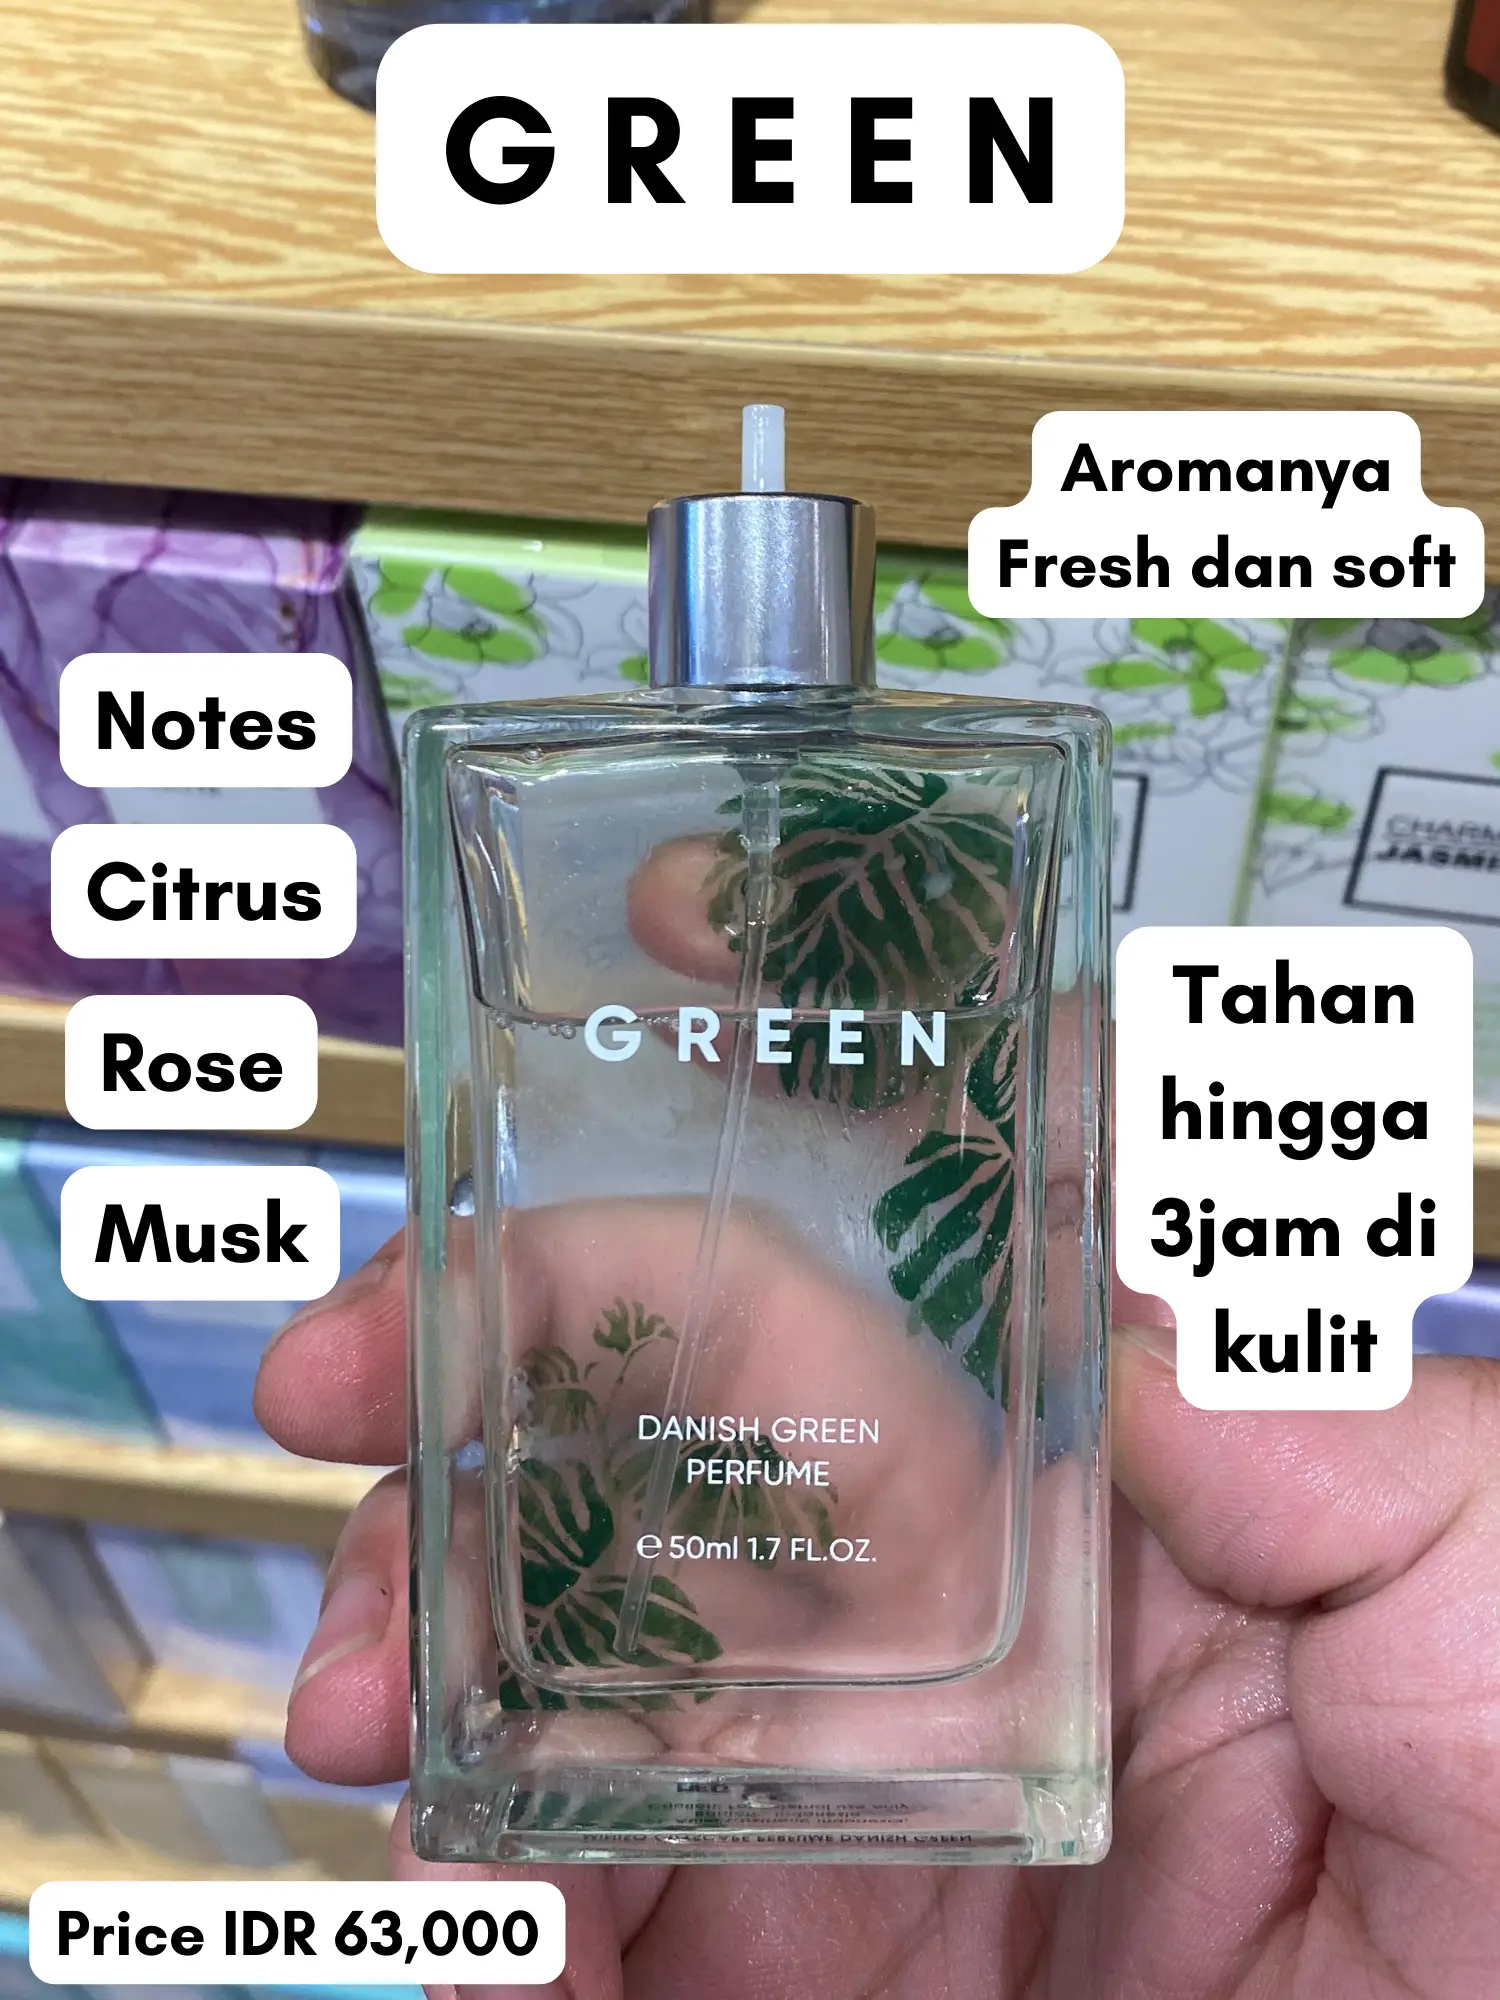 SAVE] Parfum Wangi Orang kaya, Gallery posted by anderscent